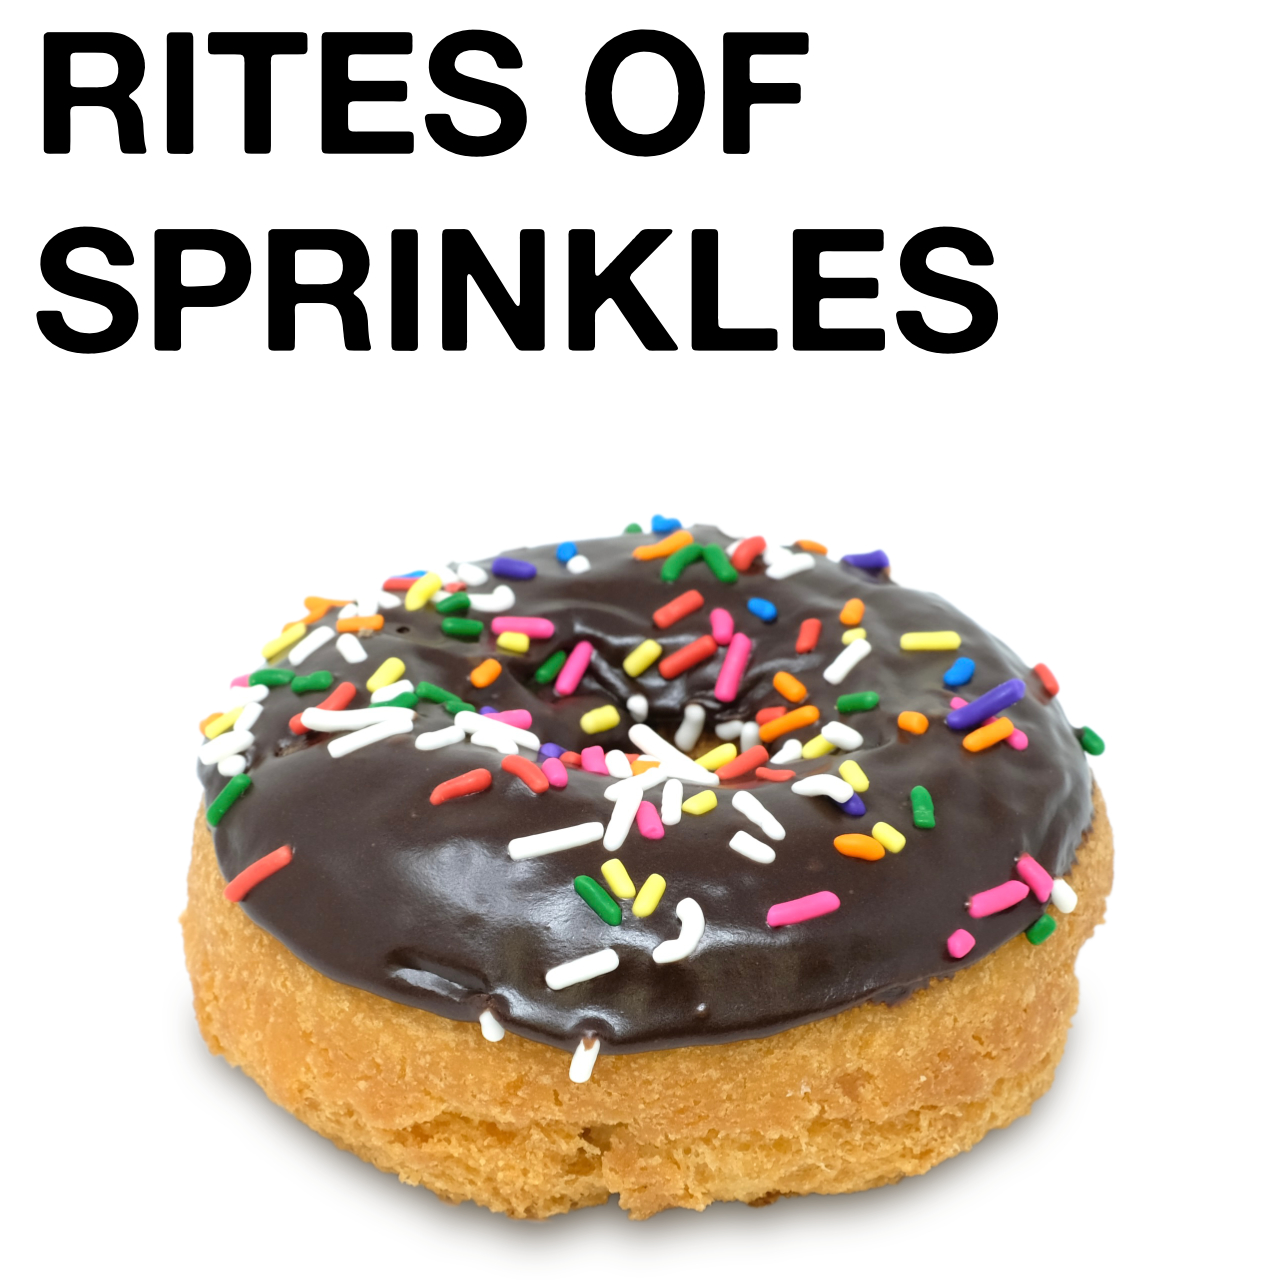 Rites of Sprinkles